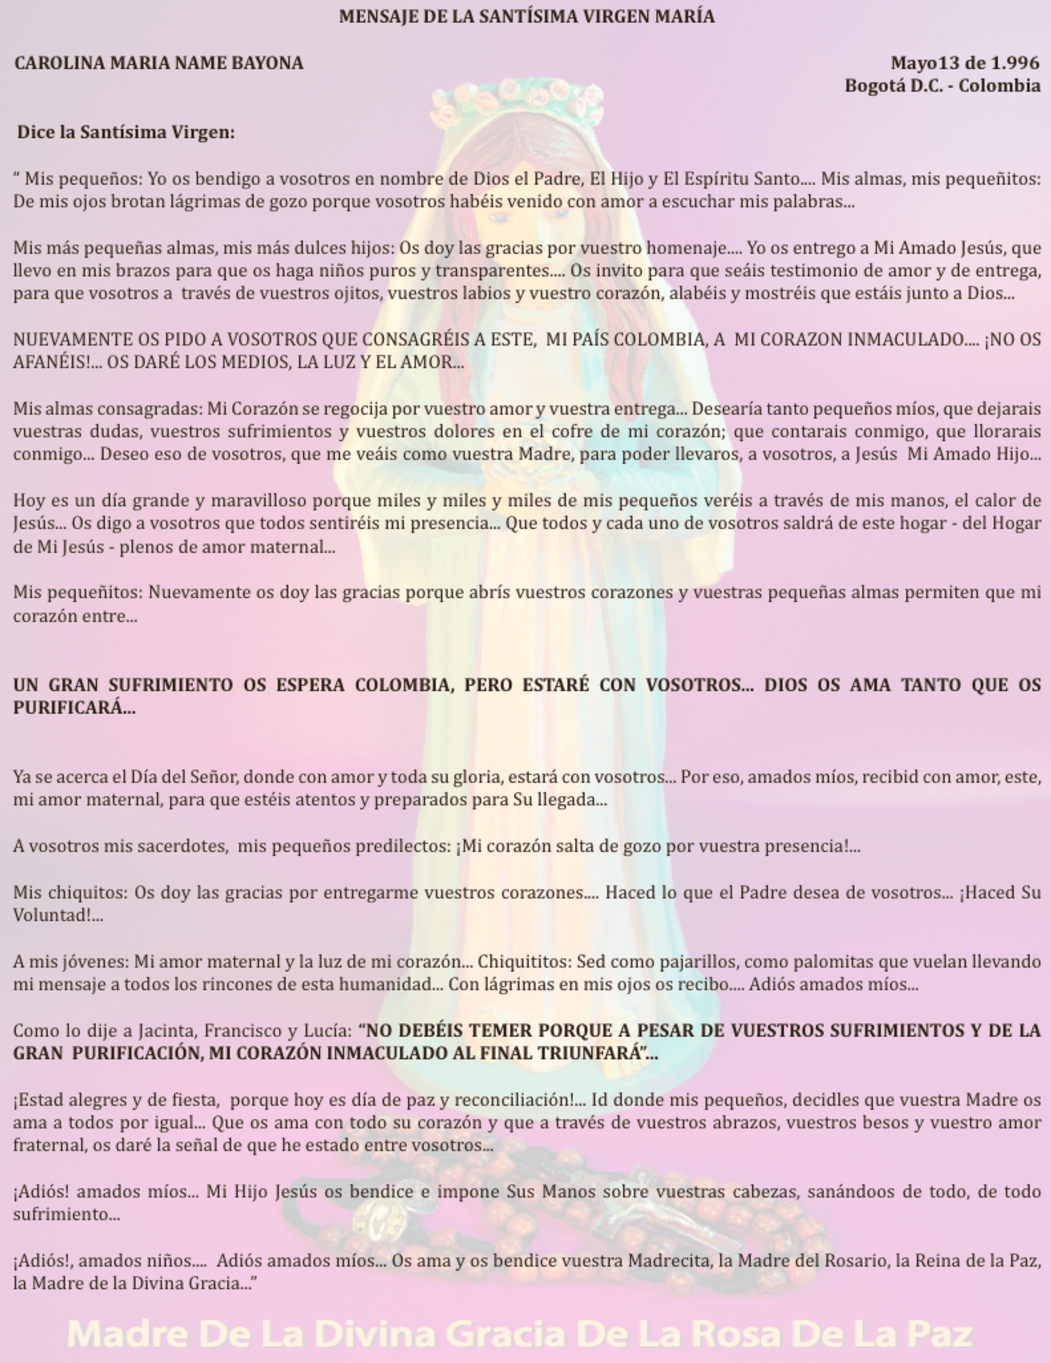 MAYO 13 de 1996 Bogotá Colombia - mensaje de la virgen